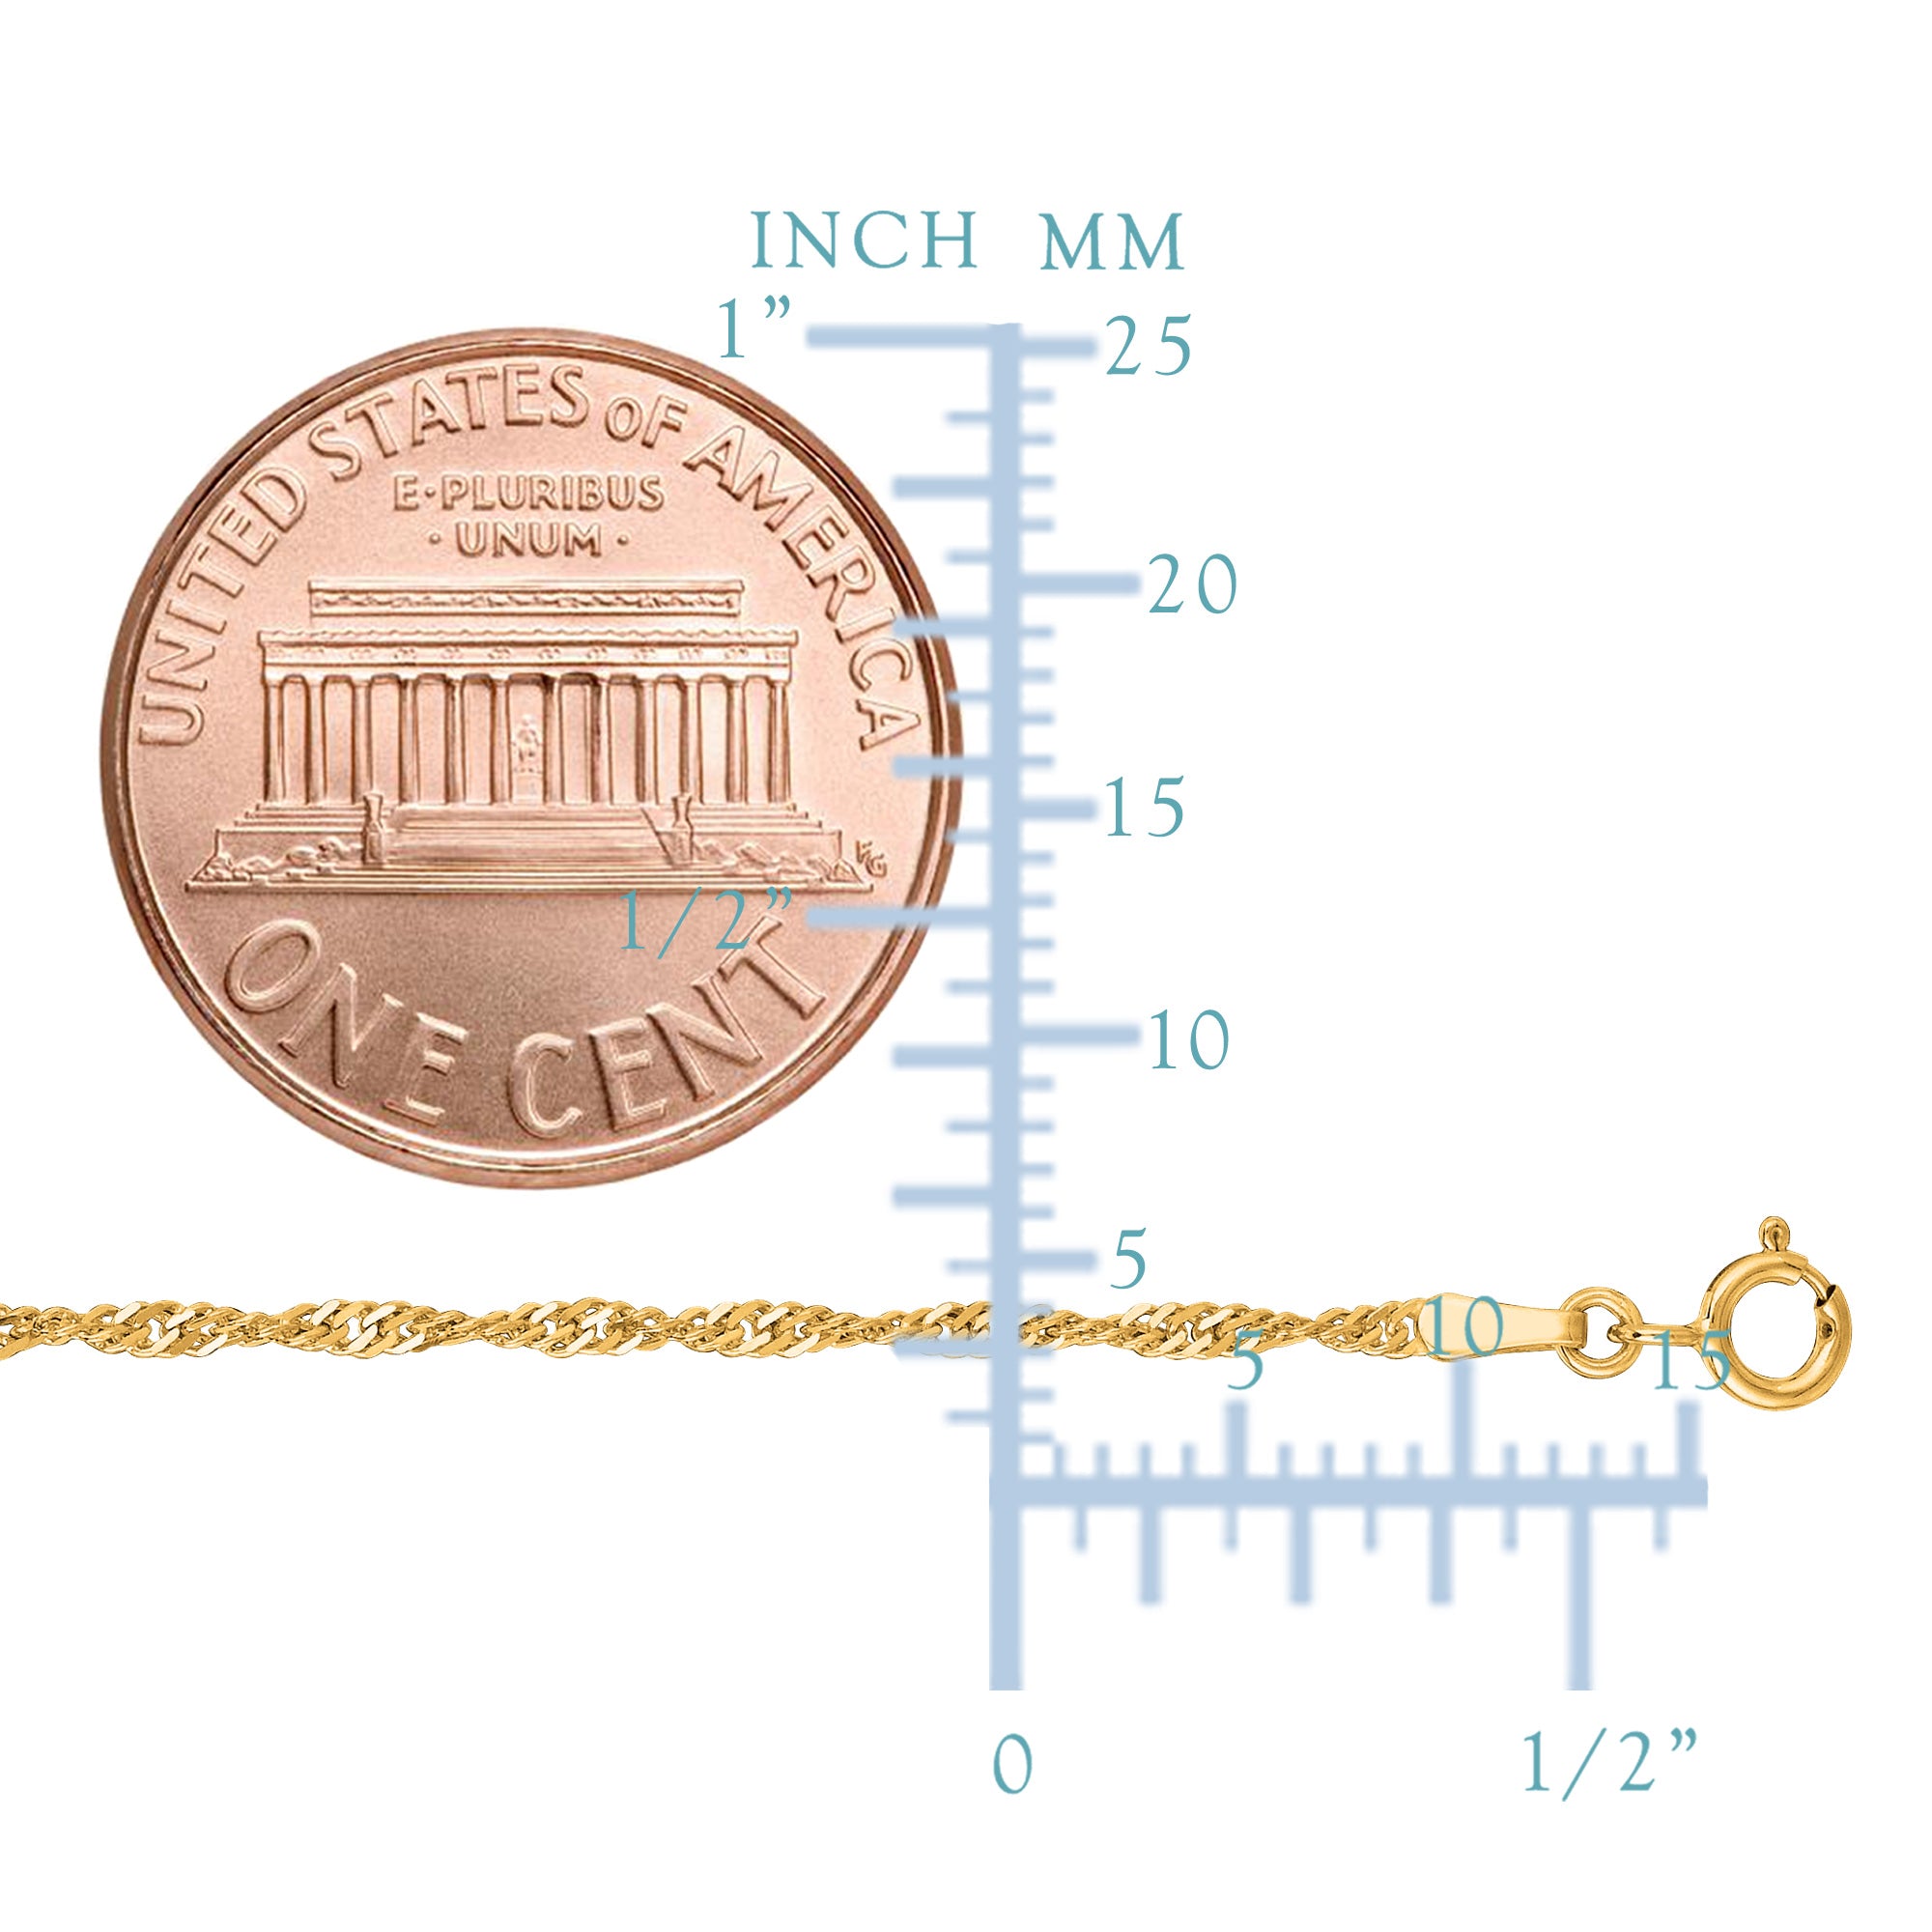 14 k gul guld Singapore kæde halskæde, 1,7 mm fine designer smykker til mænd og kvinder